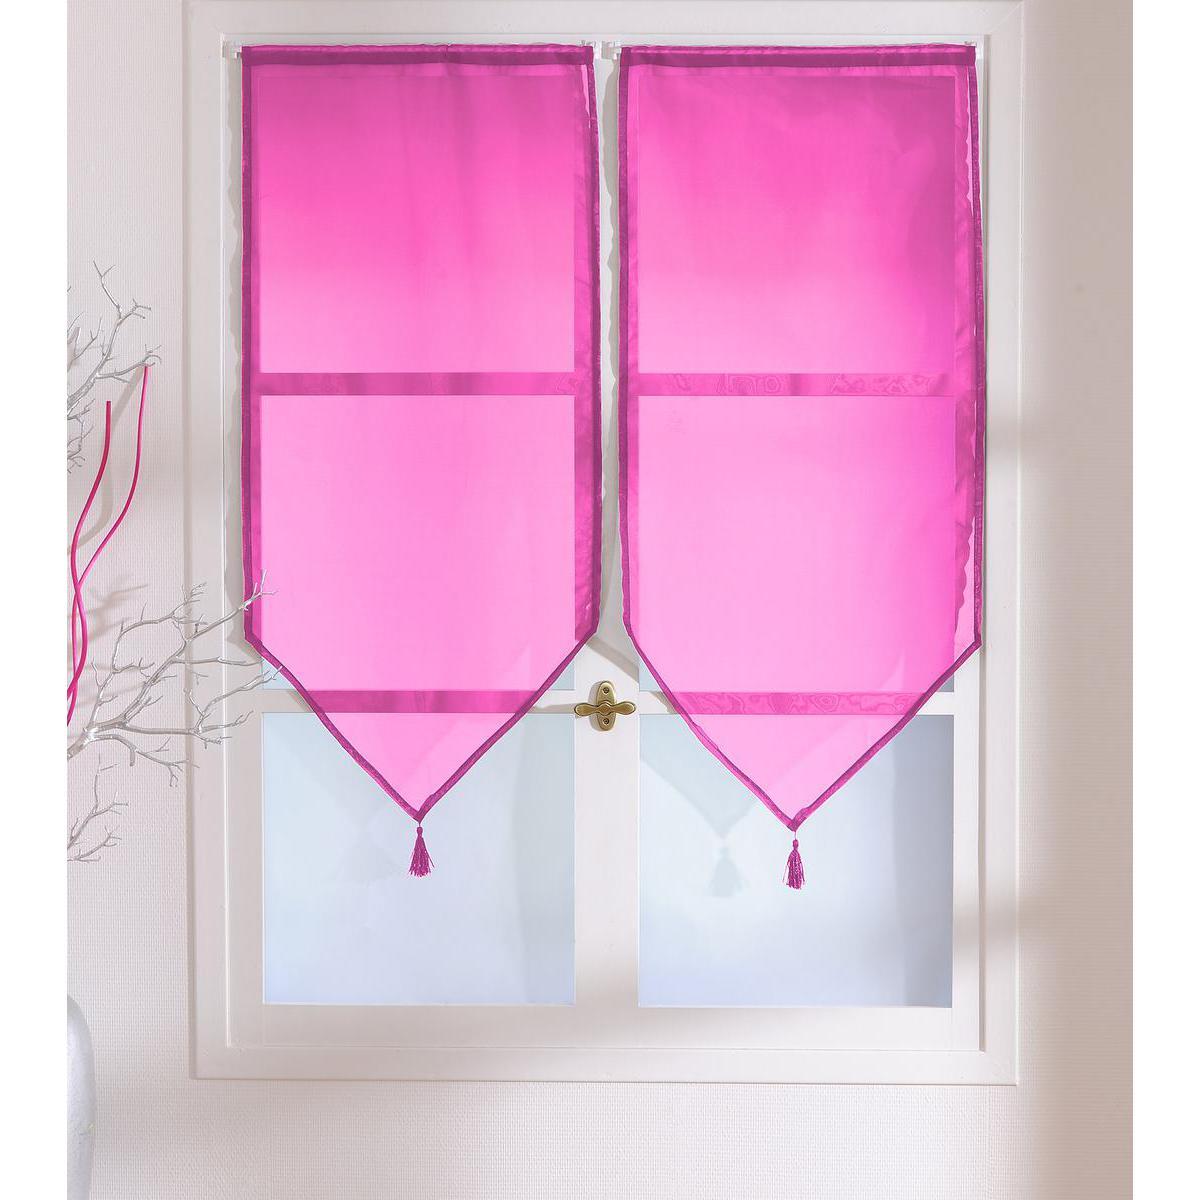 Paire de vitrages - 100% polyester - 60 x 120 cm - Rose